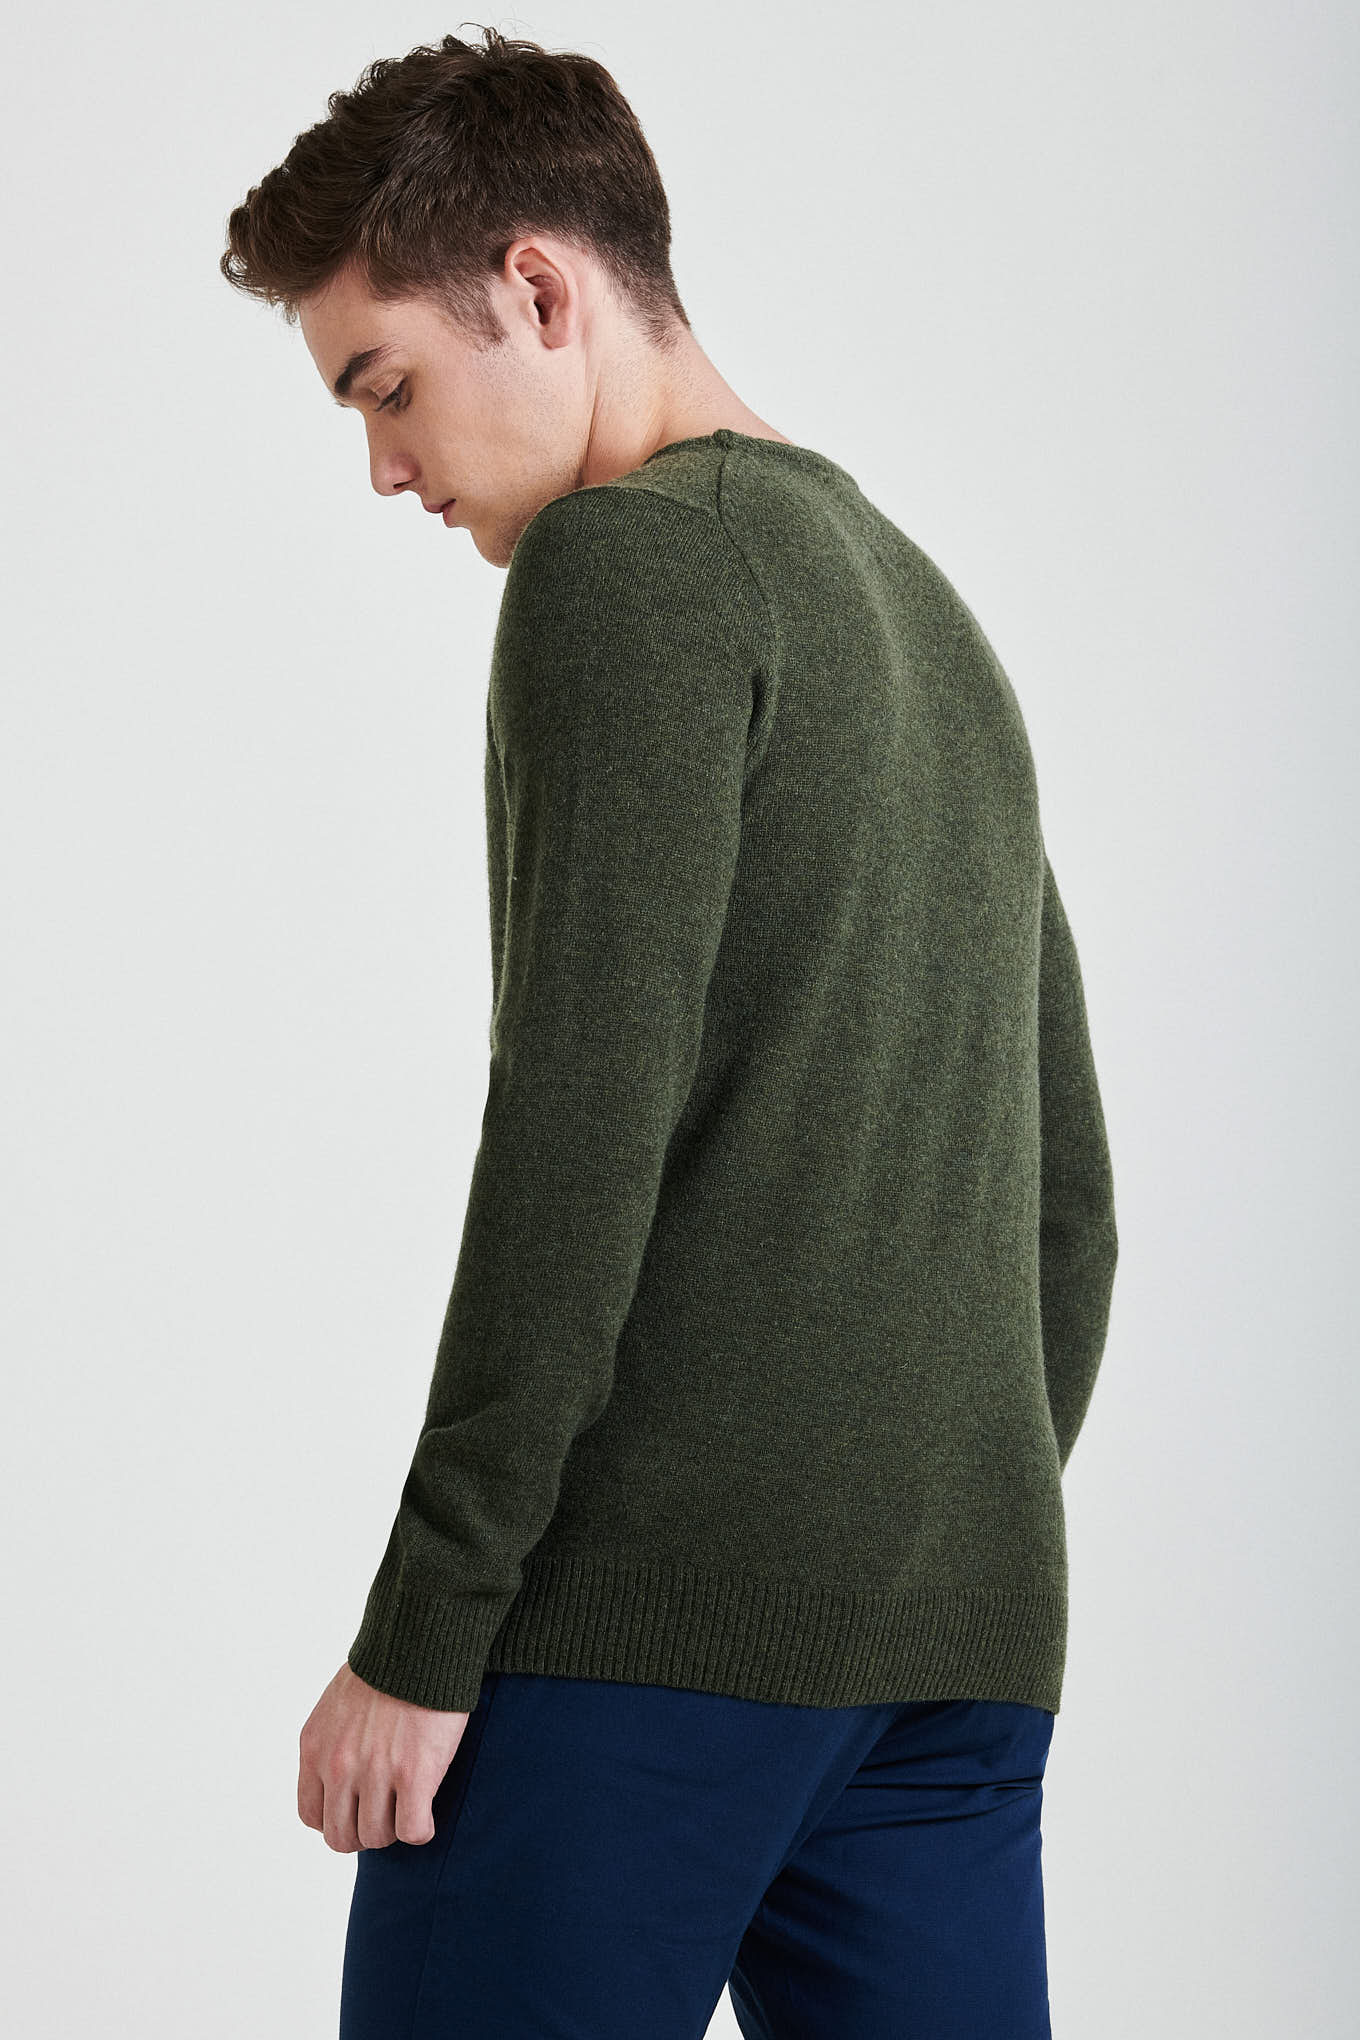 Sweater Green Sport Man